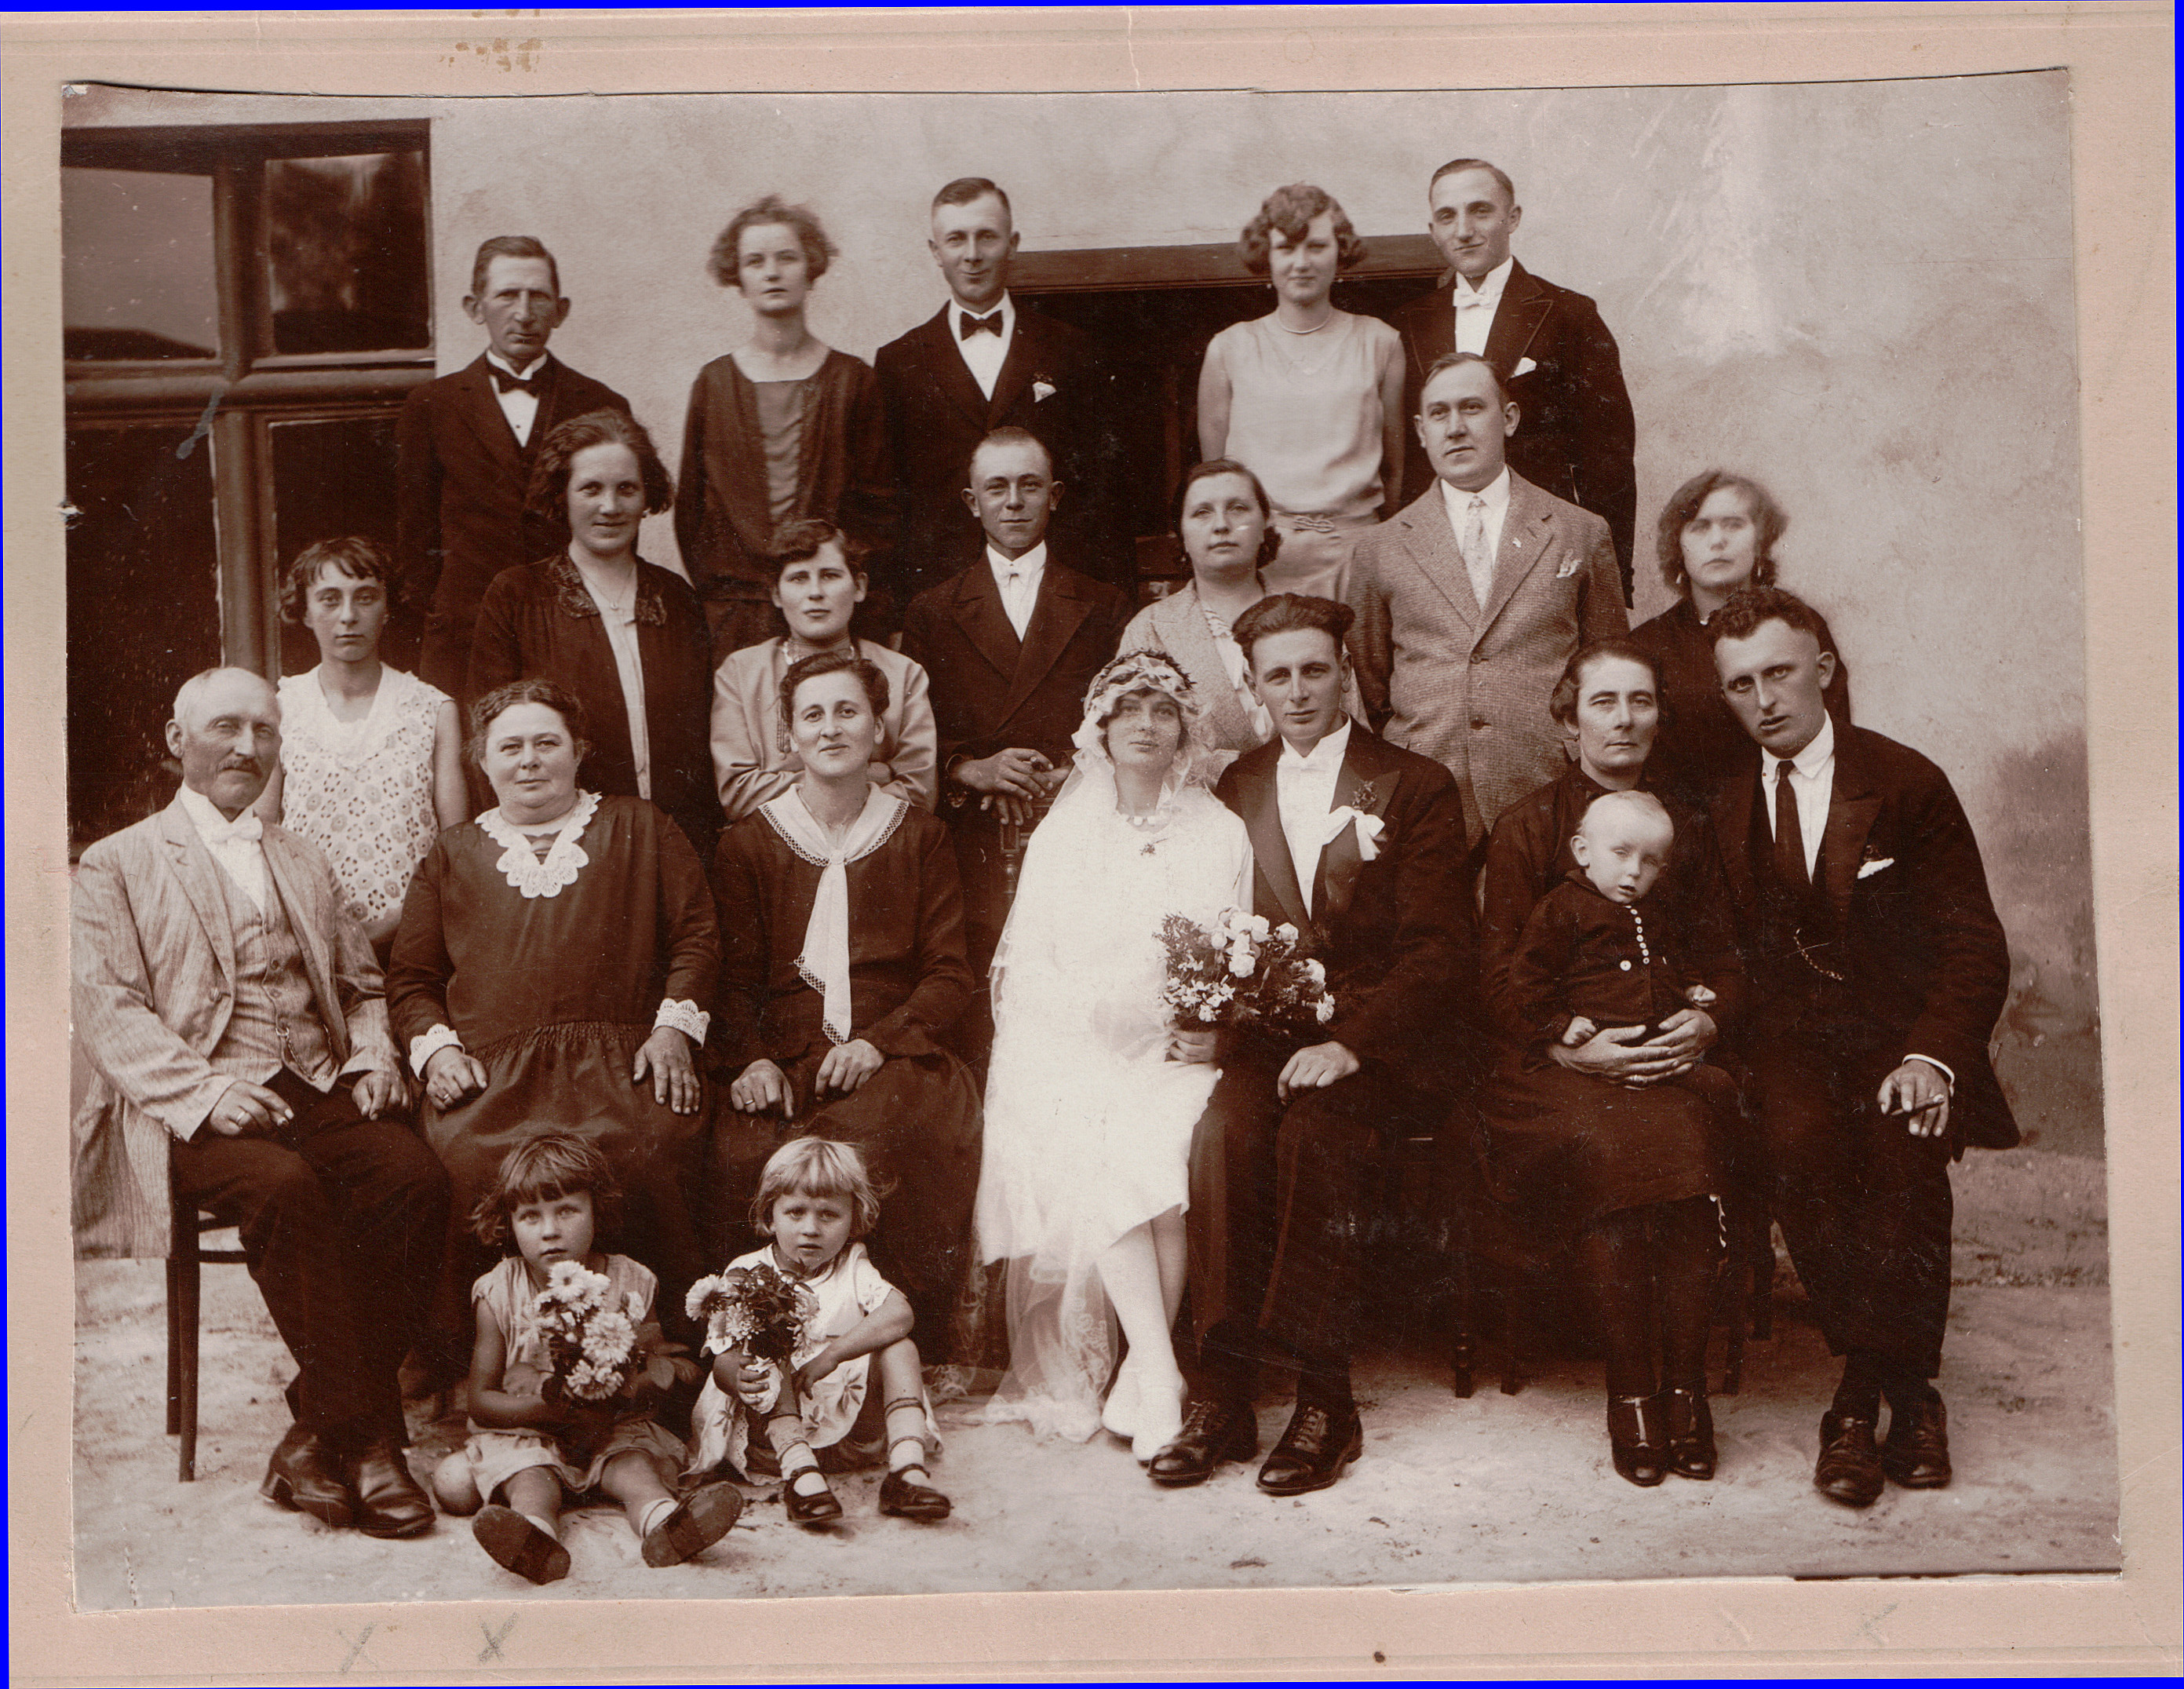 Roszczynialski Wedding Bromberg 1930.jpg